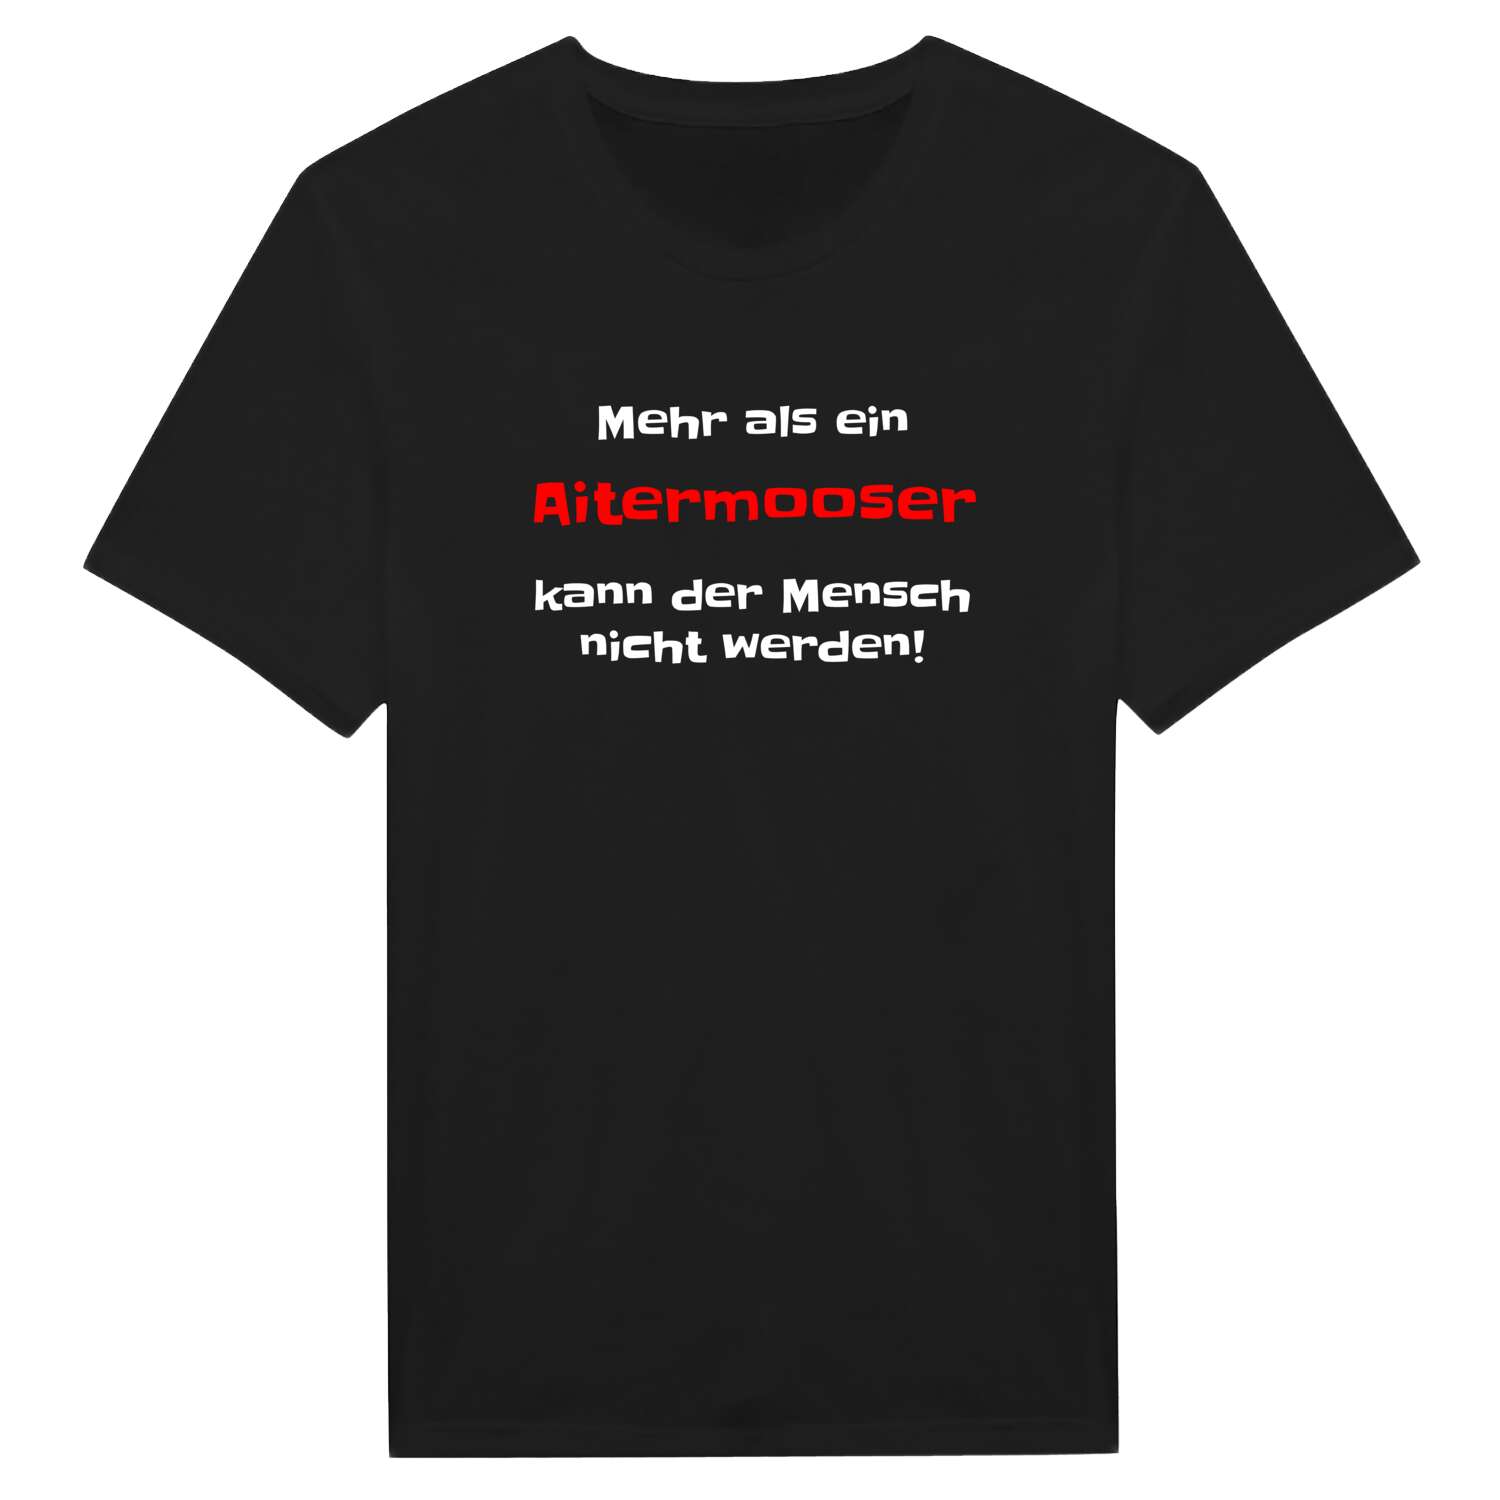 Aitermoos T-Shirt »Mehr als ein«